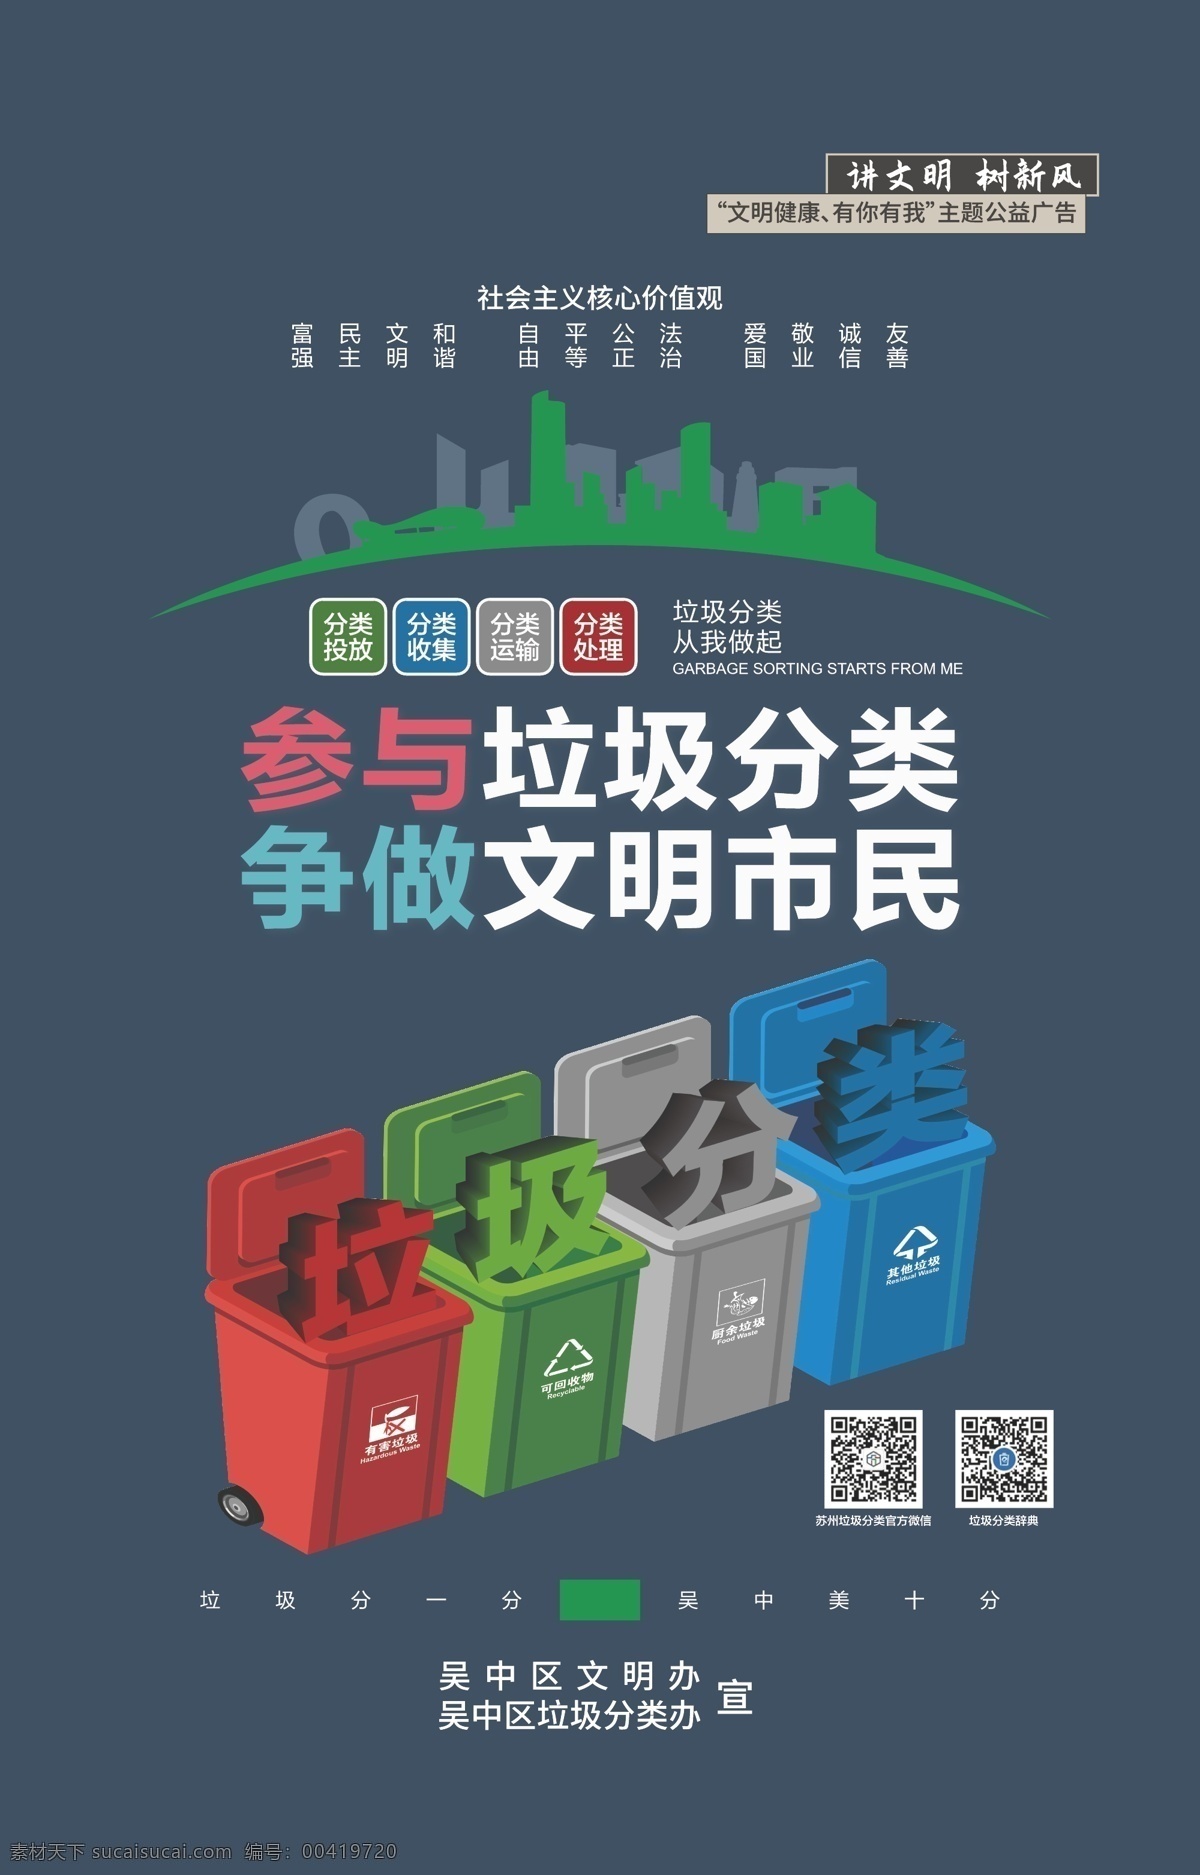 吴中区 垃圾 分类 吴中垃圾分类 垃圾分类 垃圾分类海报 垃圾分类宣传 垃圾分类设计